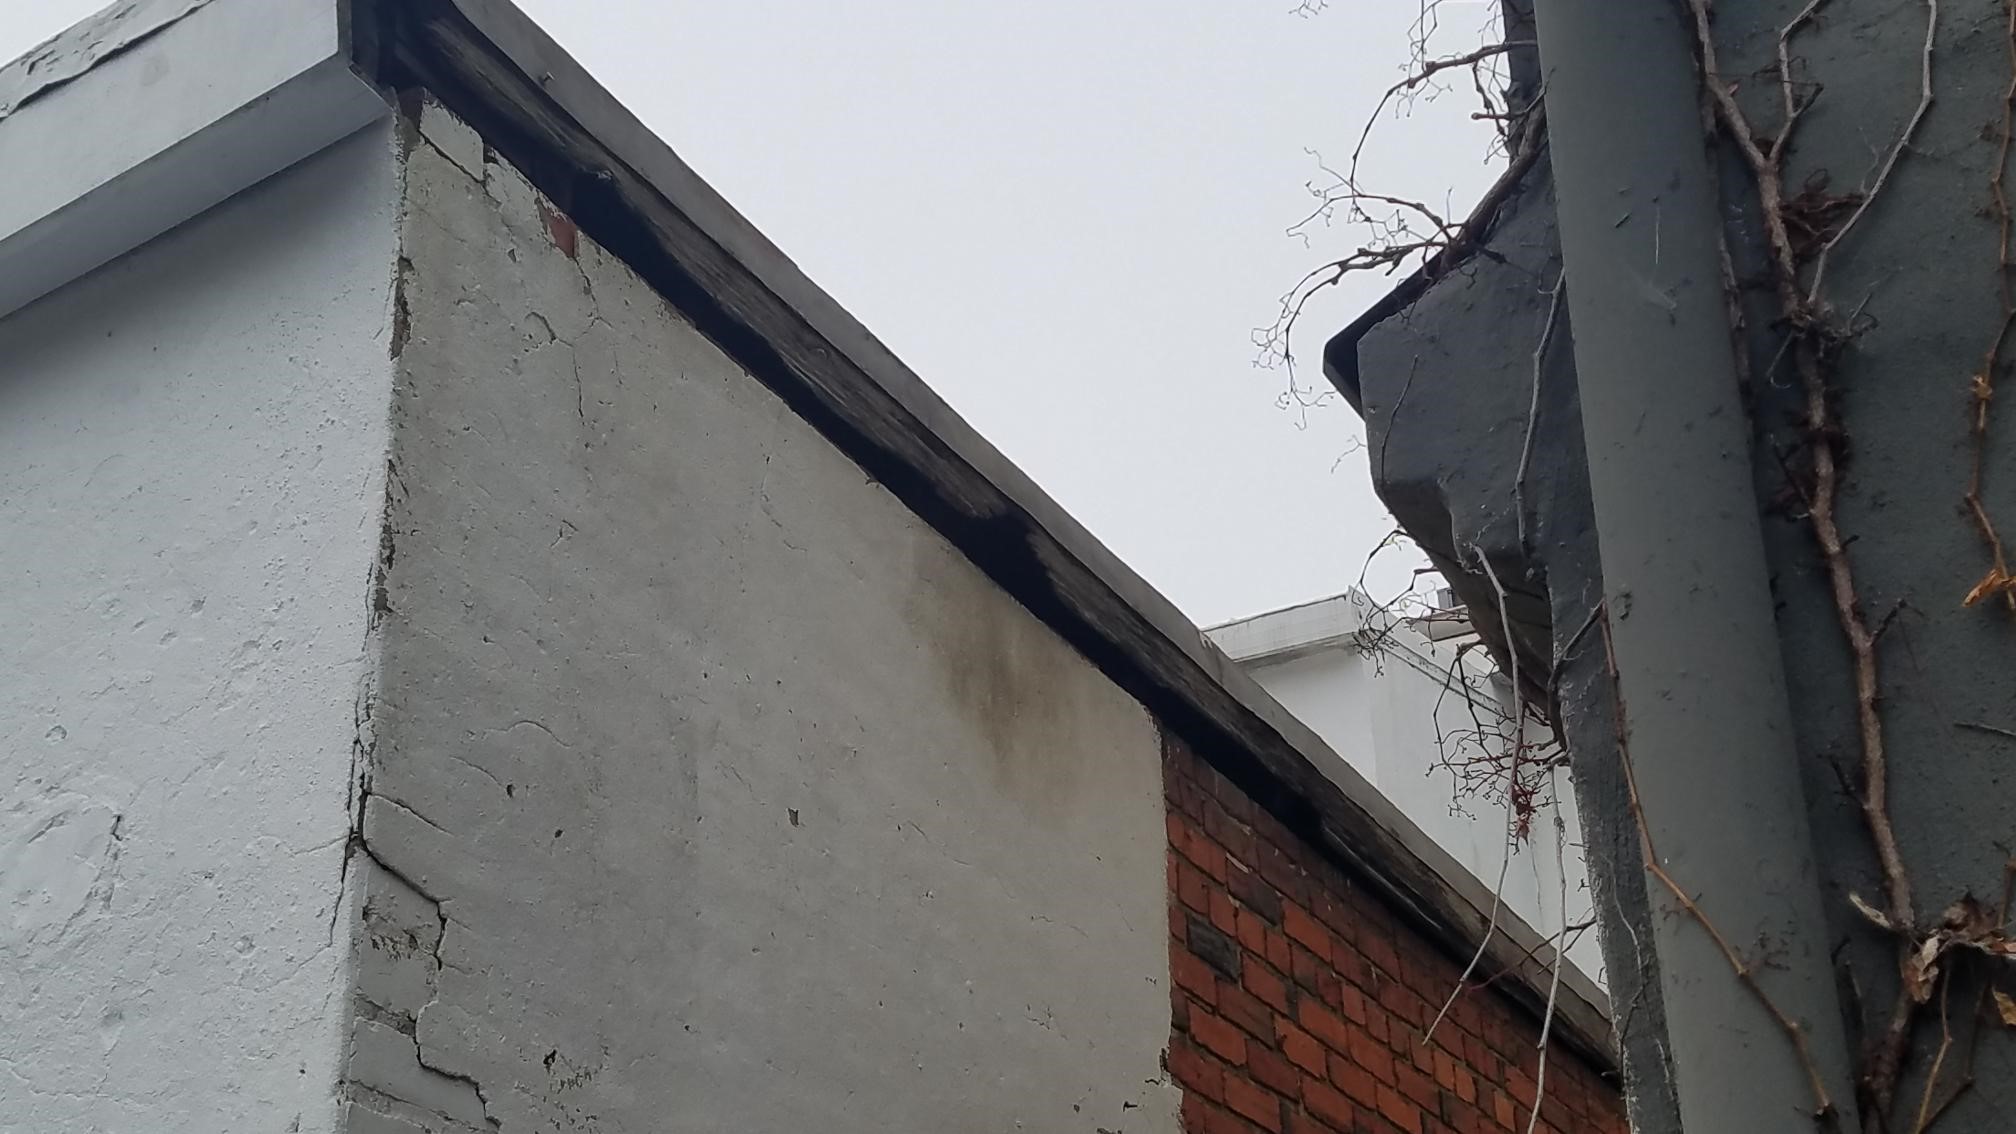  Rotten Fascia Causing Leak In Roof 